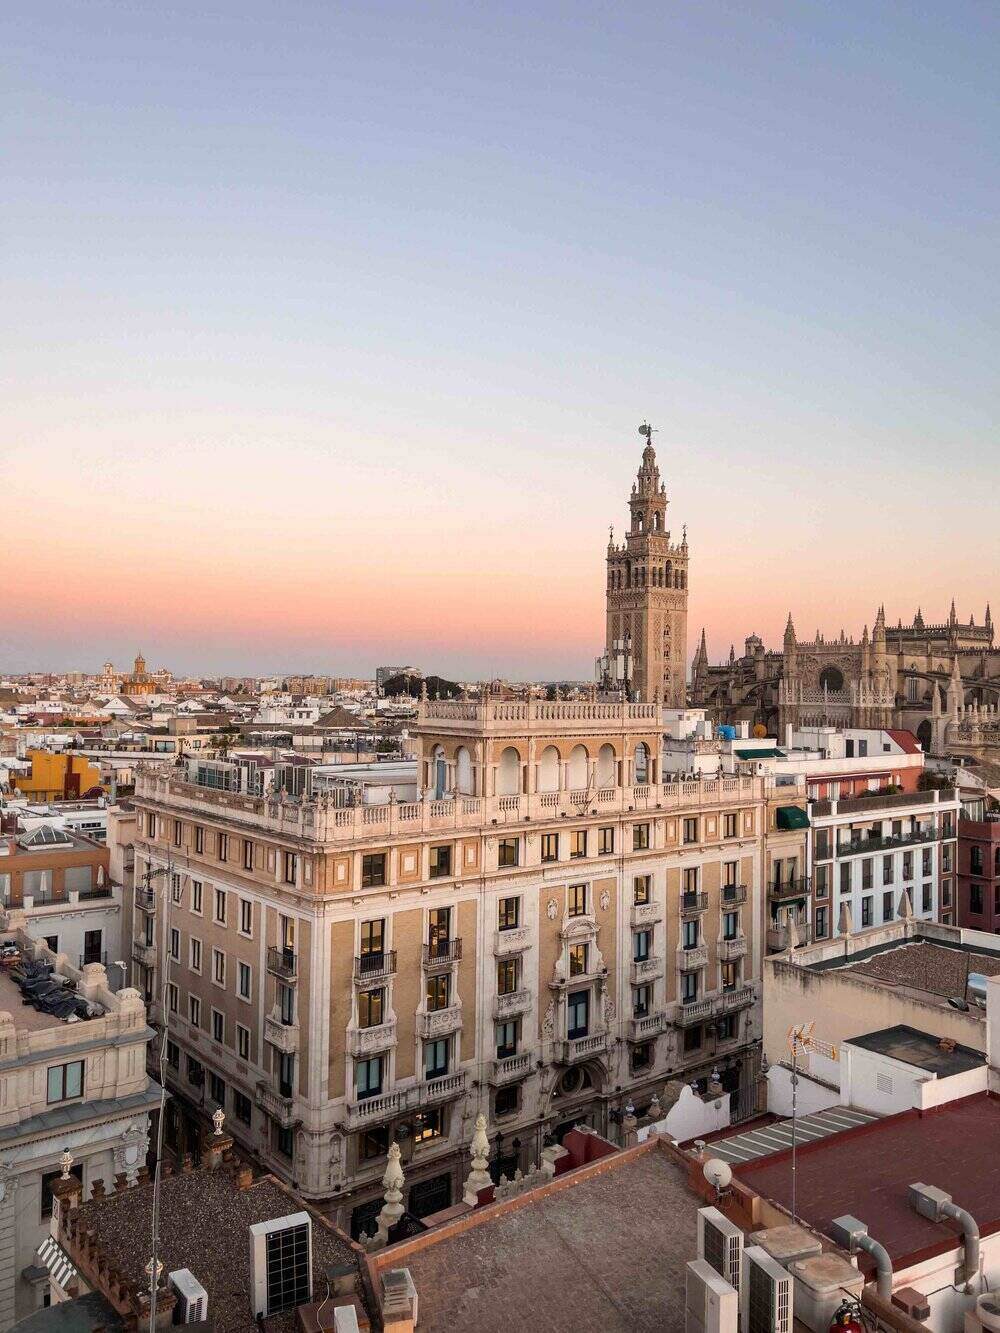 Querencia de Sevilla View